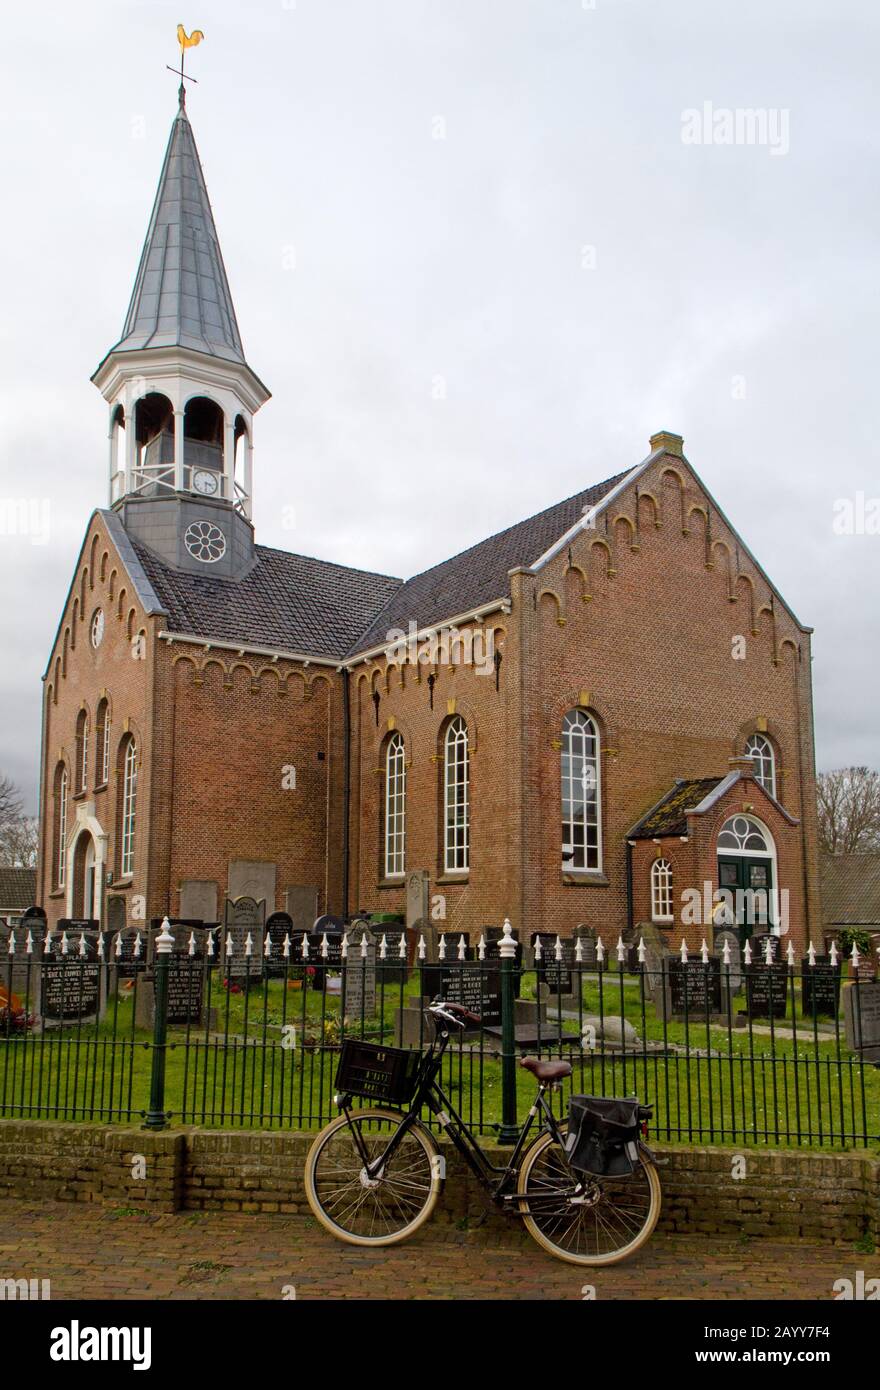 Église de Midsland sur l'île de Terschelling aux Pays-Bas, entourée d'une clôture en fer forgé, une bicyclette garée contre elle Banque D'Images